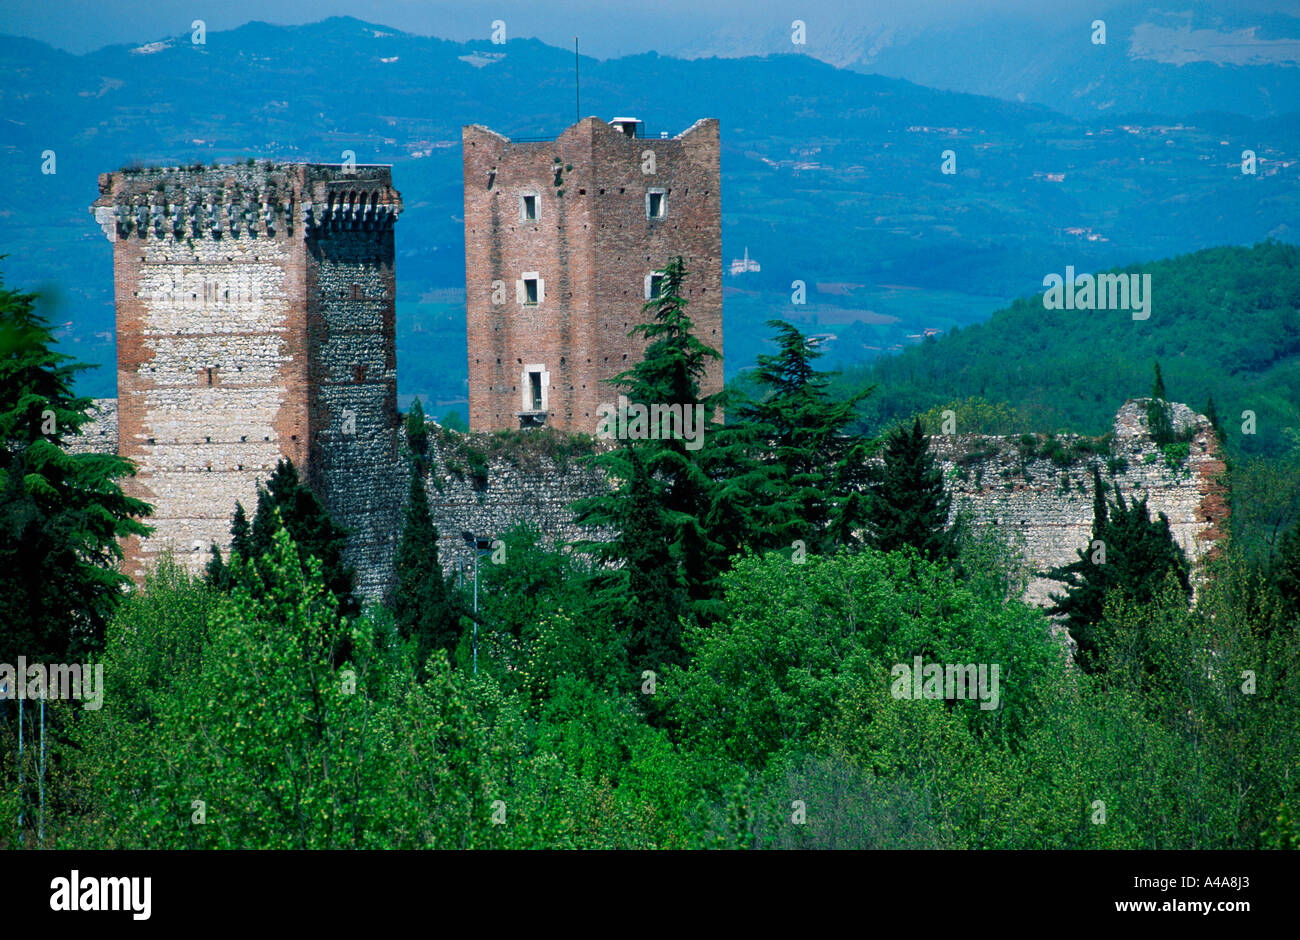 Castello di Romeo / Montecchio Maggiore Foto stock - Alamy